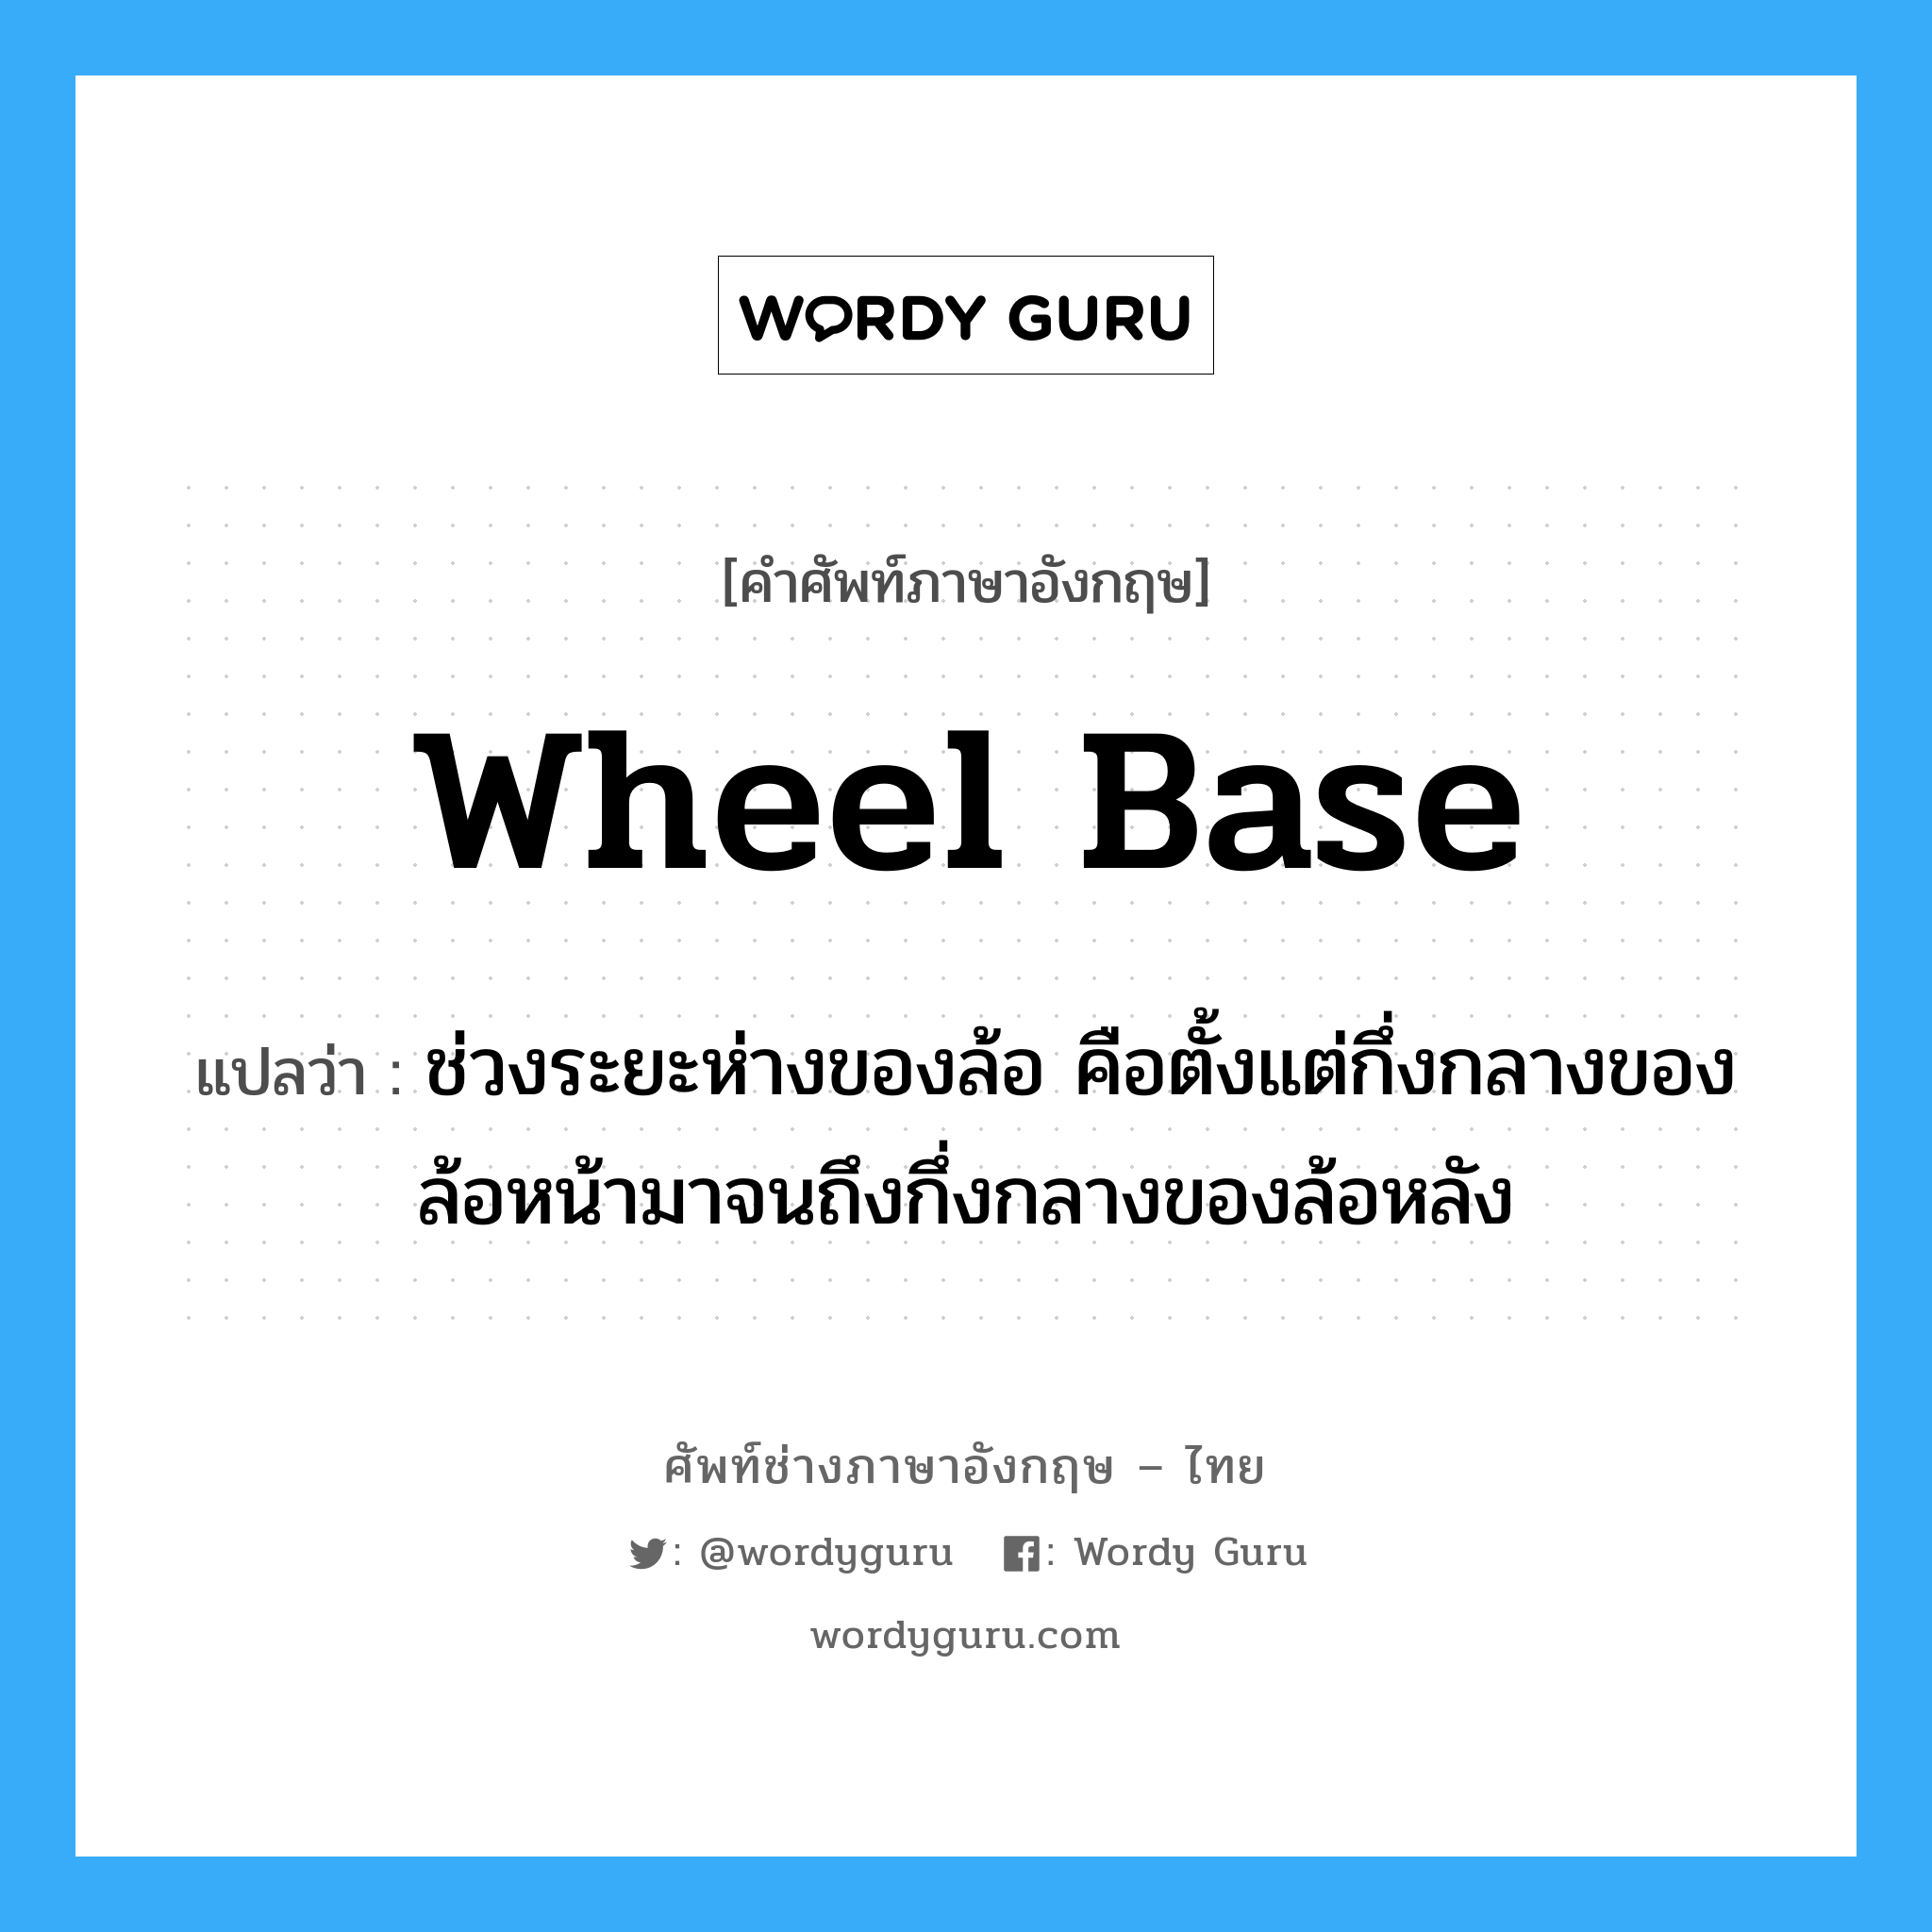 wheel base แปลว่า?, คำศัพท์ช่างภาษาอังกฤษ - ไทย wheel base คำศัพท์ภาษาอังกฤษ wheel base แปลว่า ช่วงระยะห่างของล้อ คือตั้งแต่กึ่งกลางของล้อหน้ามาจนถึงกึ่งกลางของล้อหลัง